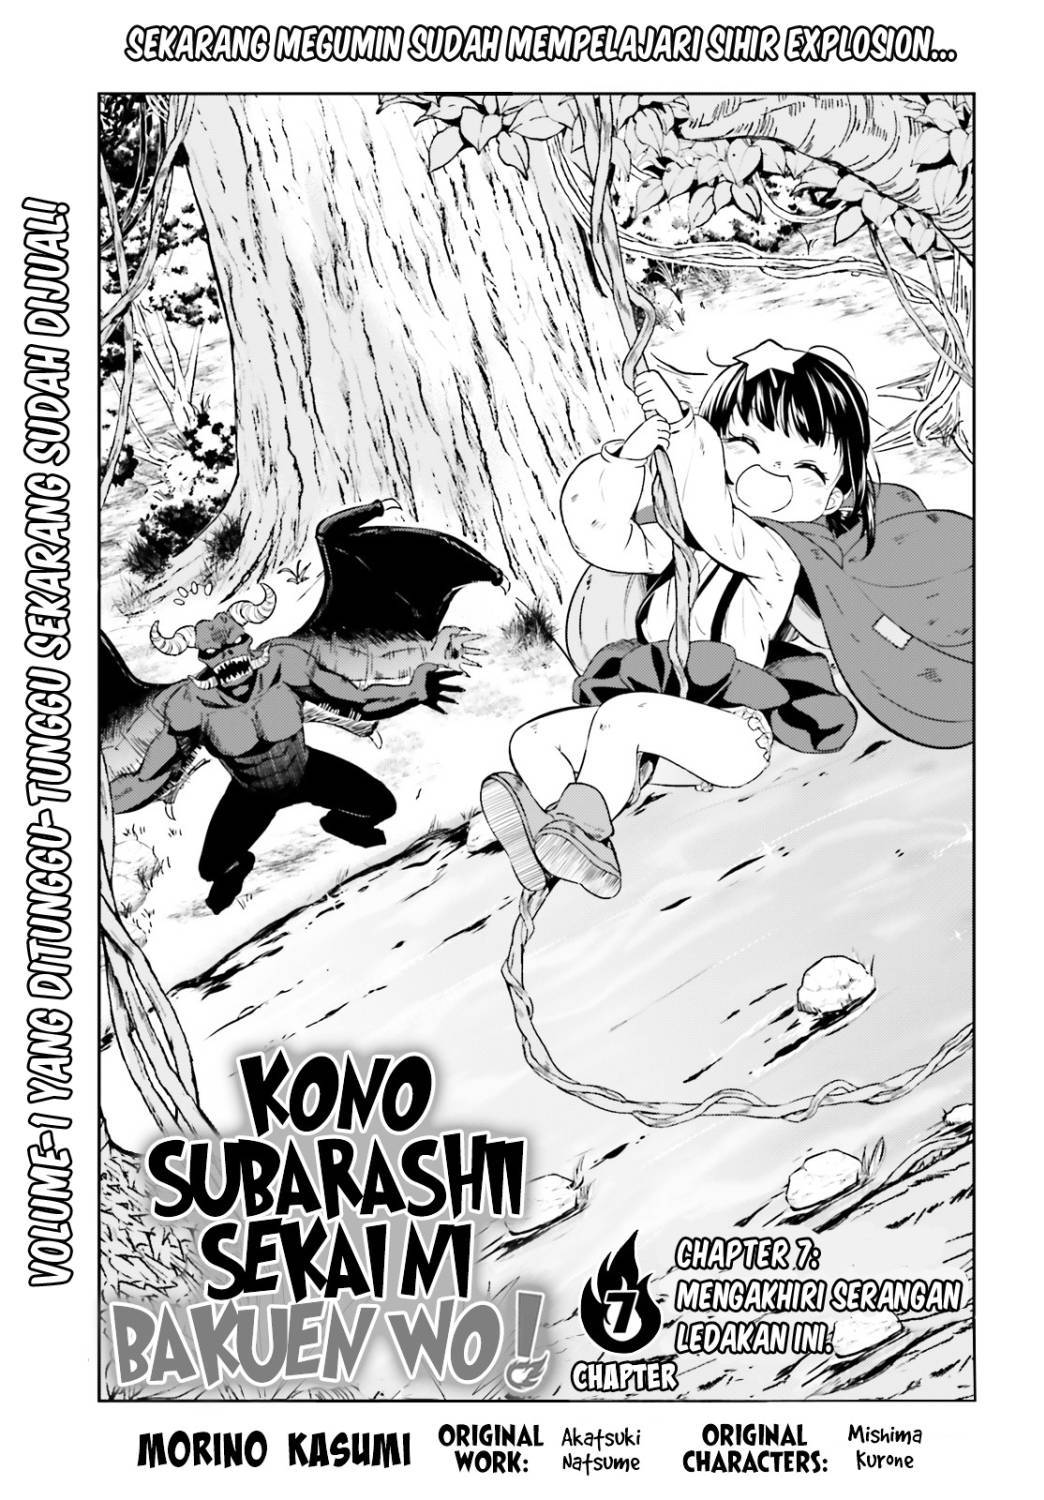 Kono Subarashii Sekai ni Bakuen wo! Chapter 7